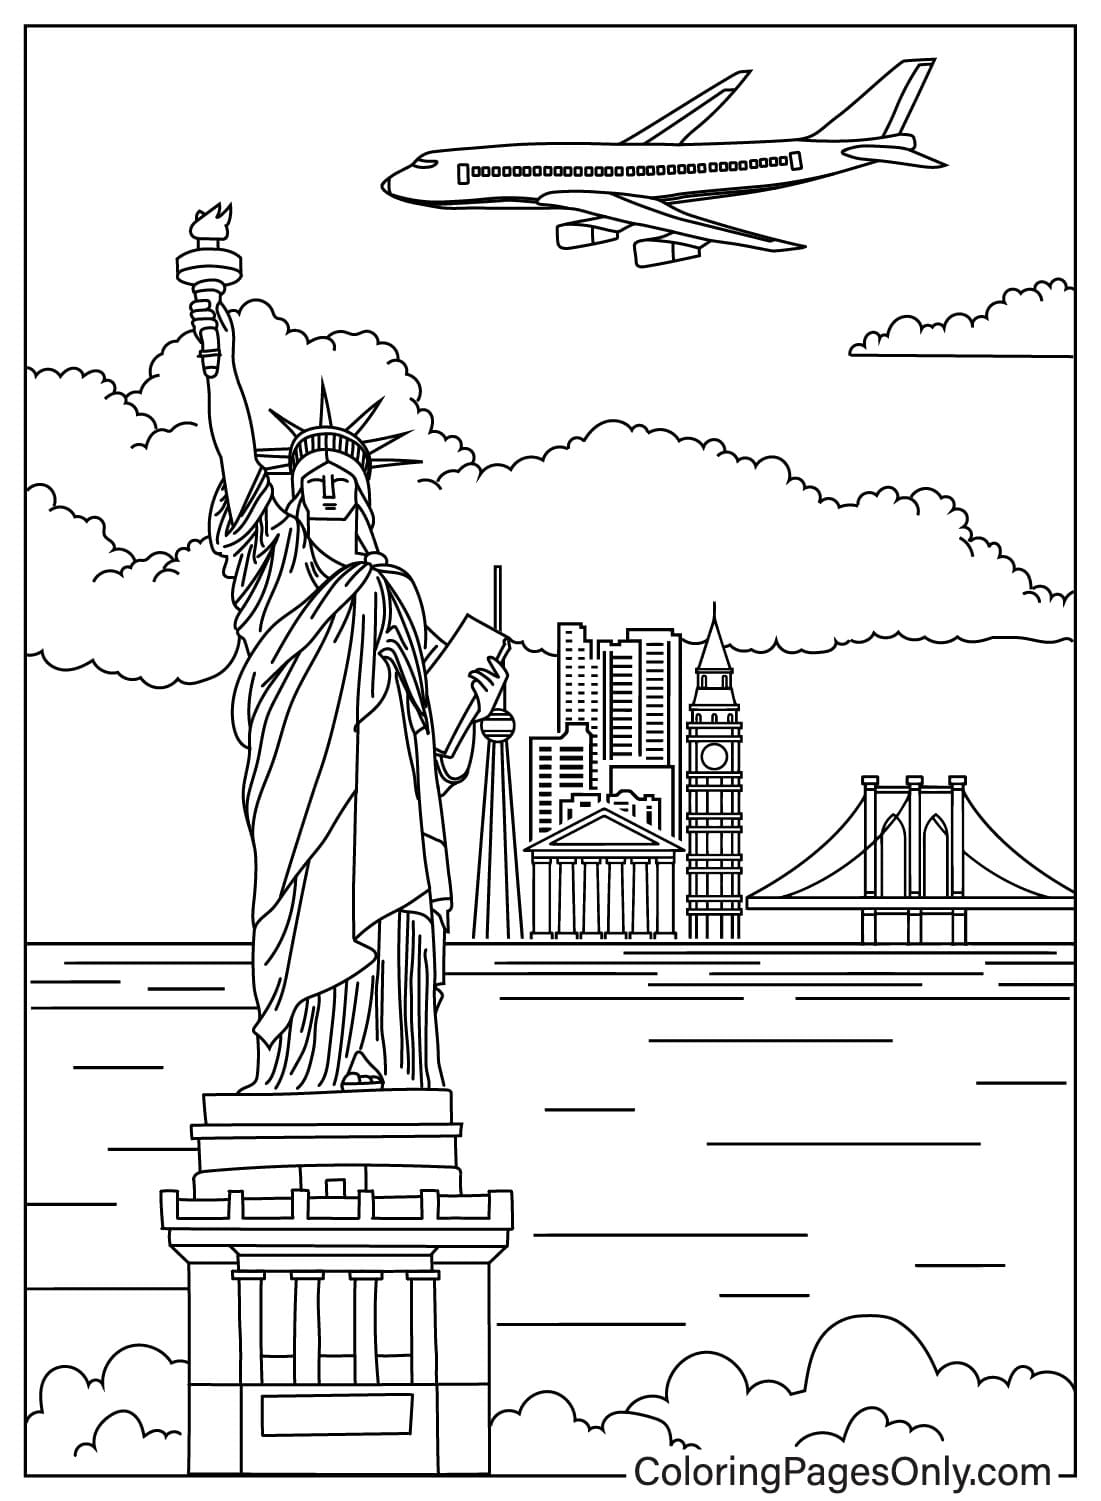 Vrijheidsbeeld New York tekening kleurplaat